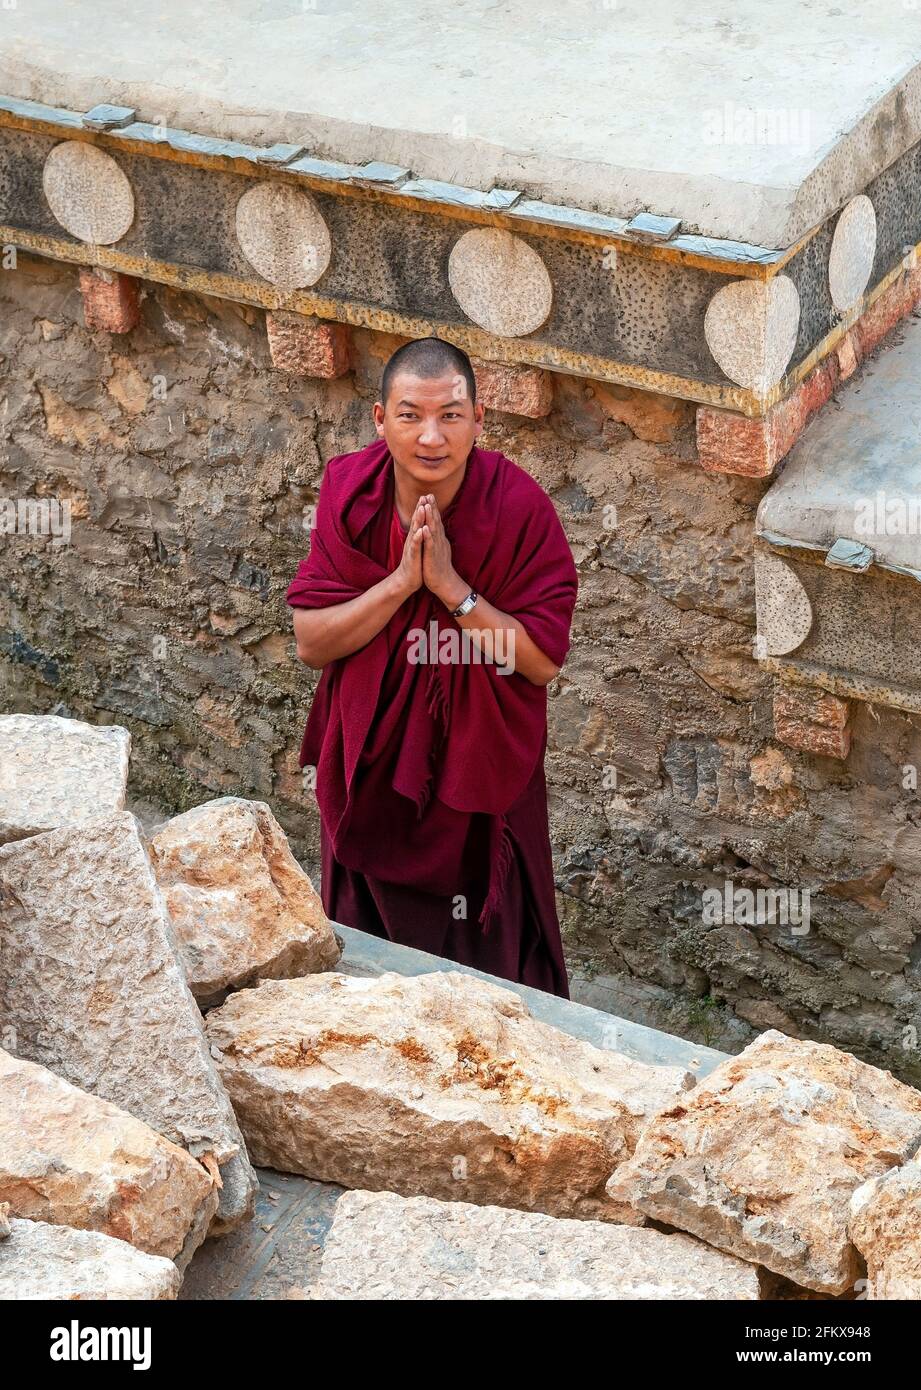 Monje tibetano haciendo reverencia en el monasterio de Songzanlin, también conocido como Ganden Sumtseling Gompa en Zhongdian, Shangri La, provincia de Yunnan, China. Foto de stock